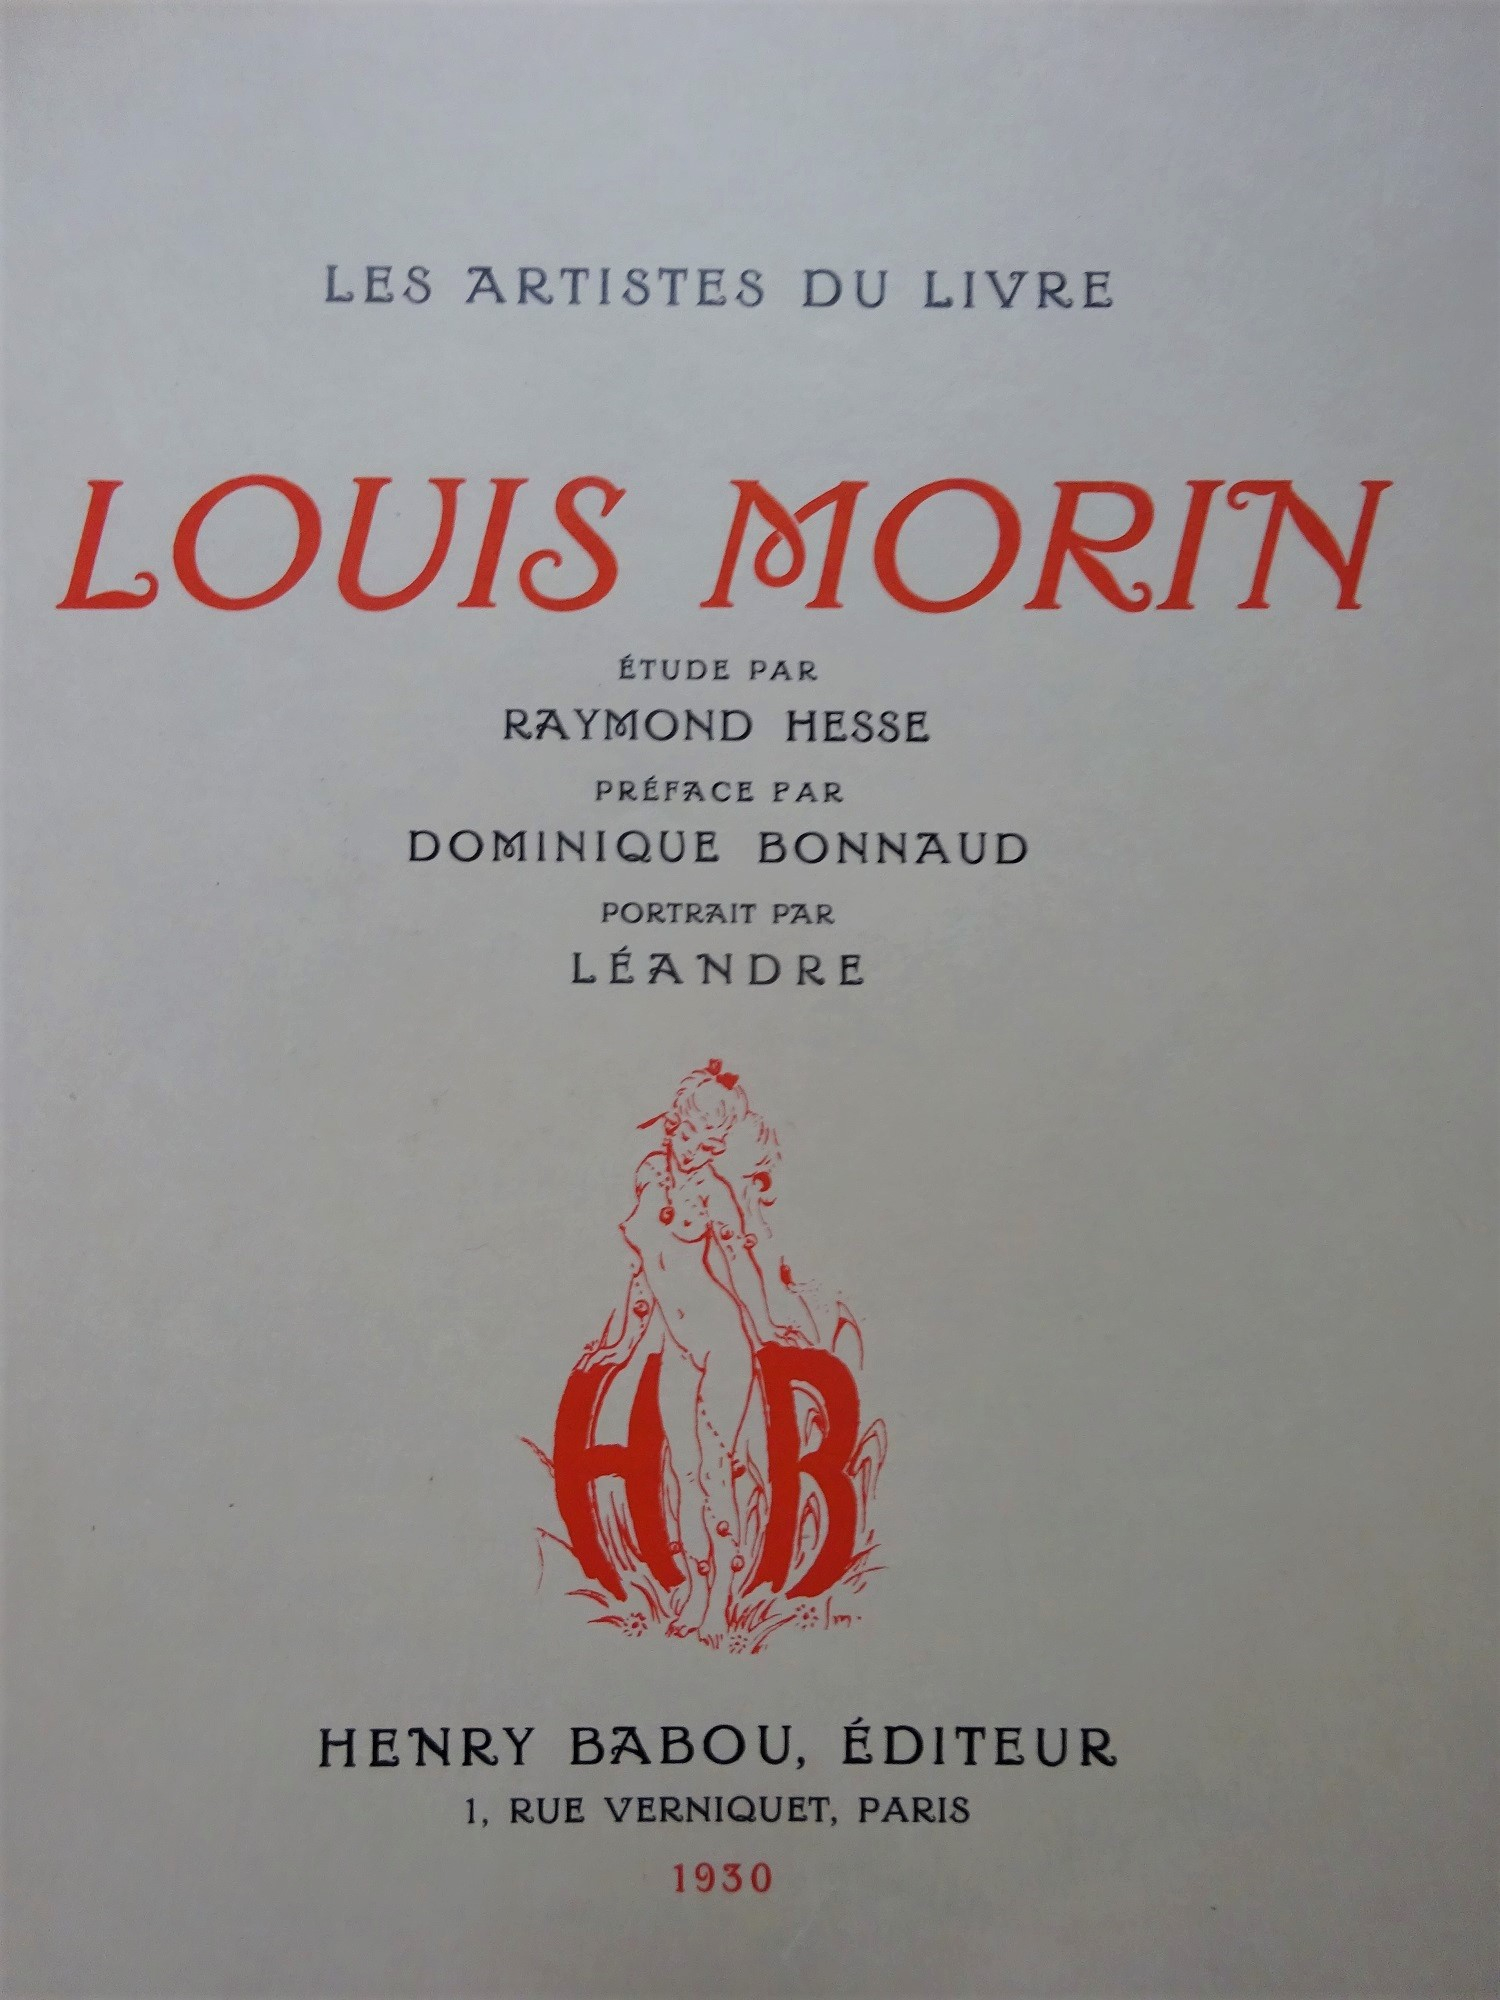 Les Artistes du livre. Louis Morin